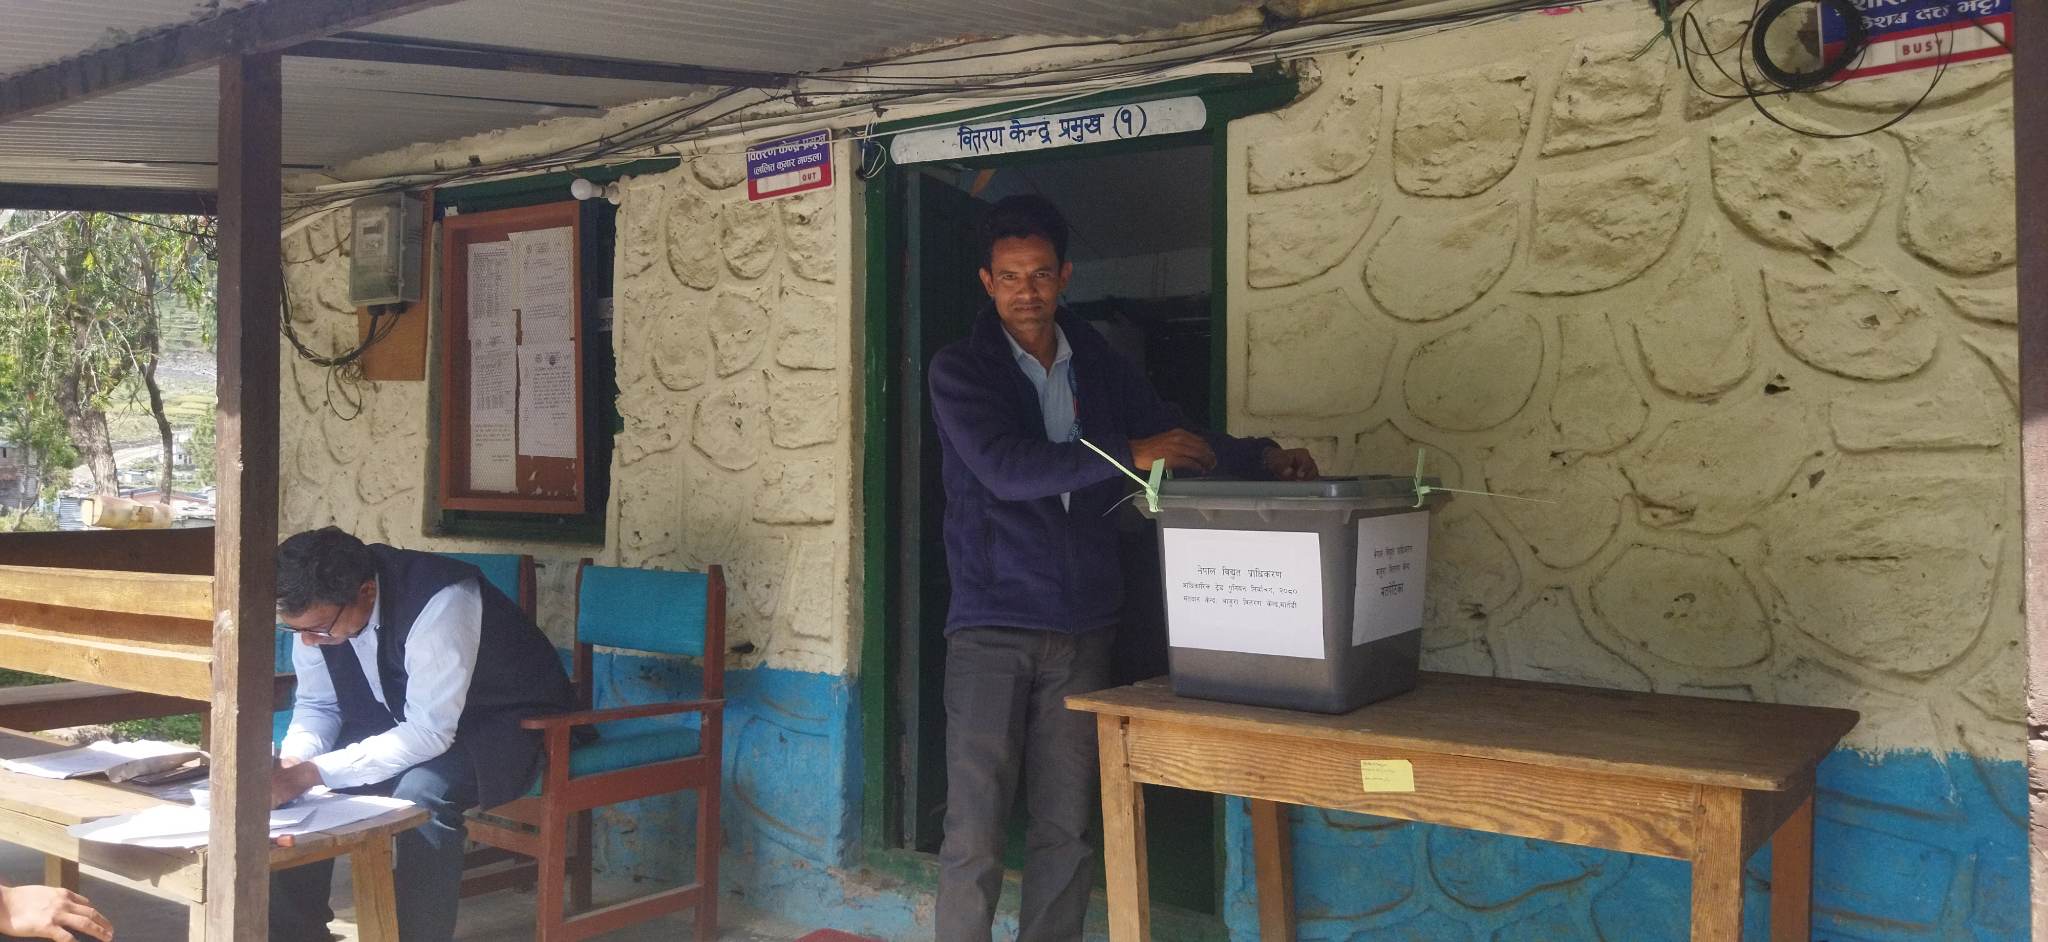 नेपाल बिद्युत प्राधिकरणकाे आधिकारिक ट्रेड युनियनकाे मतदान सकियाे, मतगणना हुन बाँकी